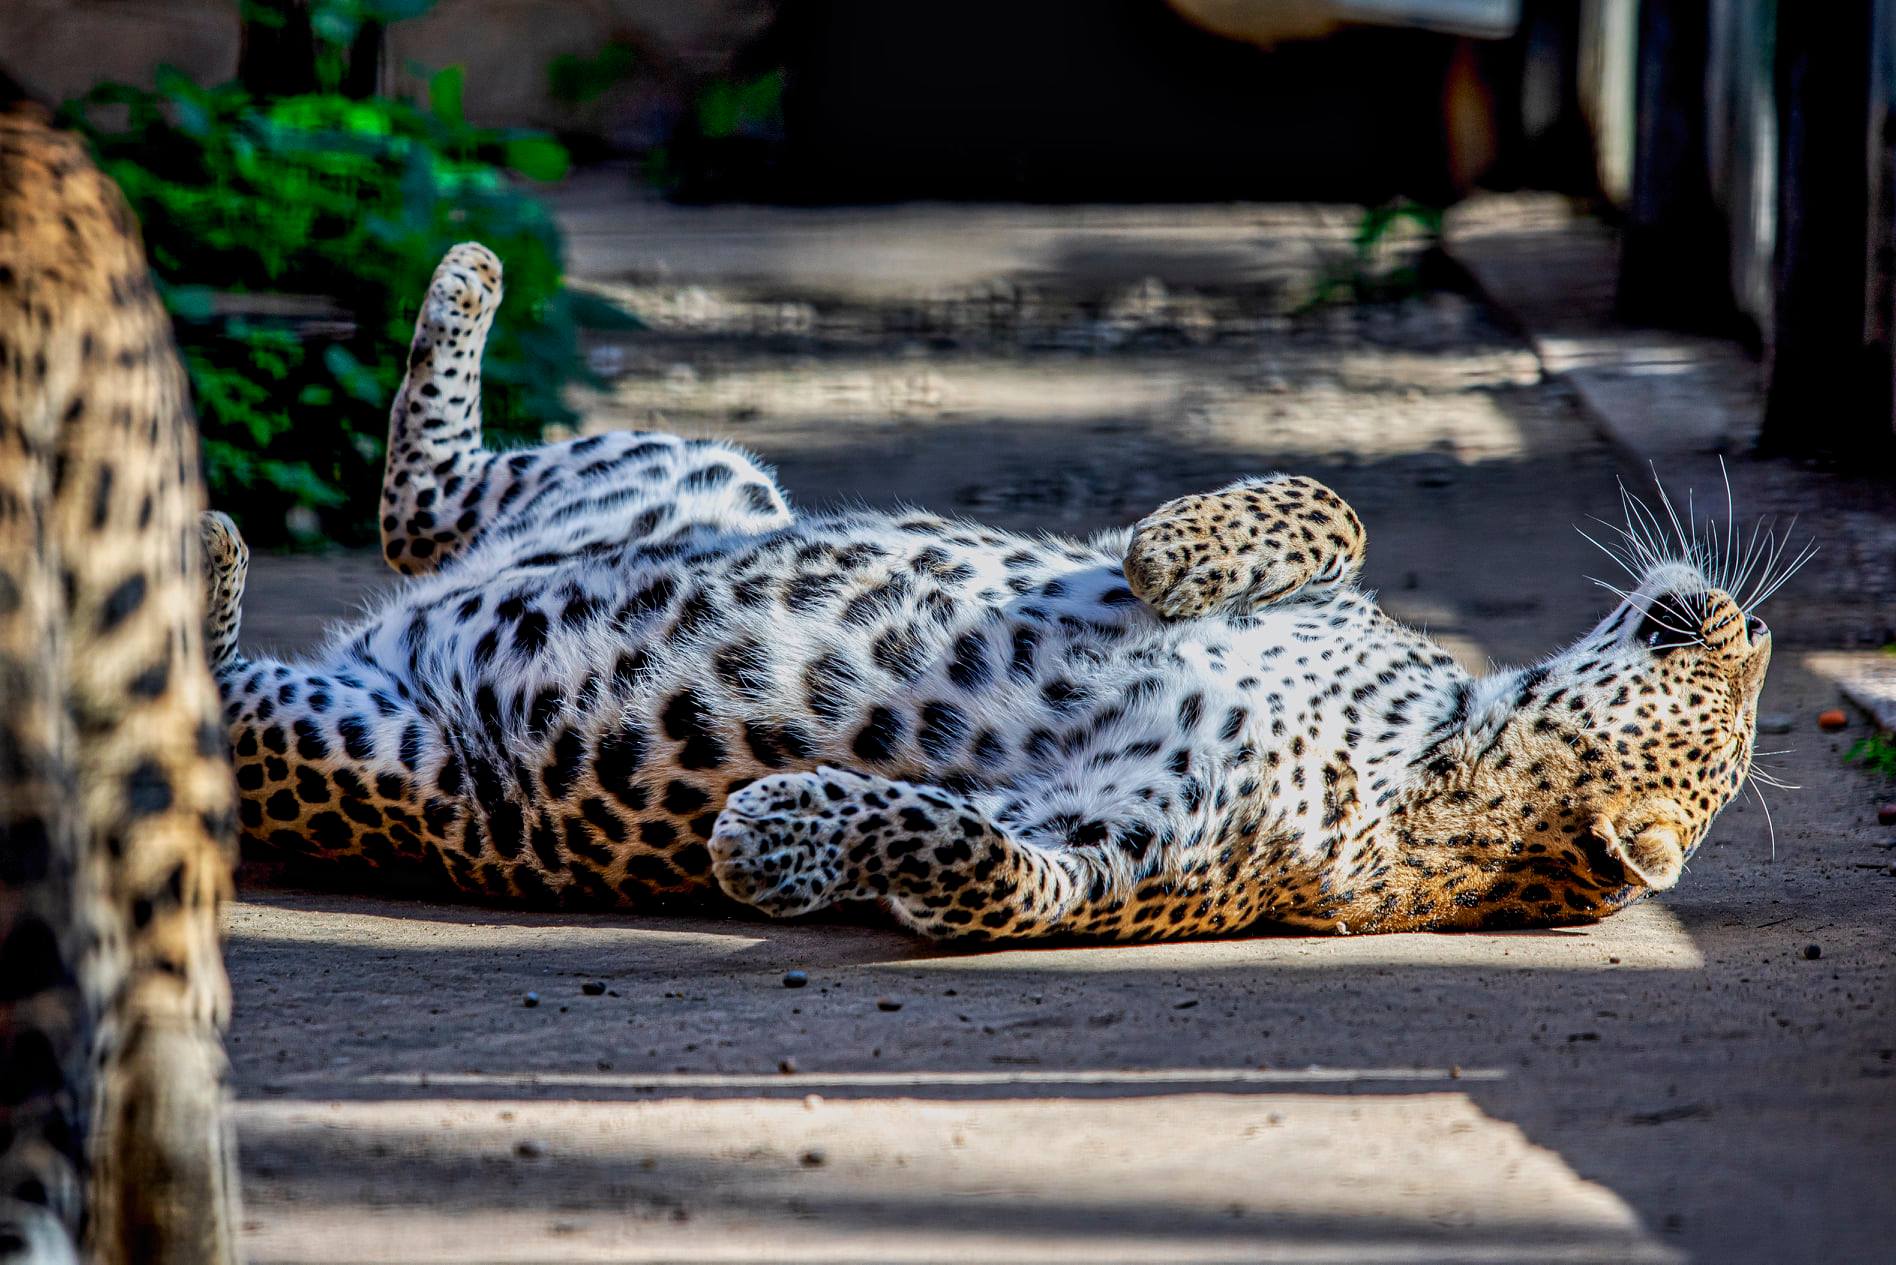 Leopardo del Zoo de Jerez, en una imagen del parque.